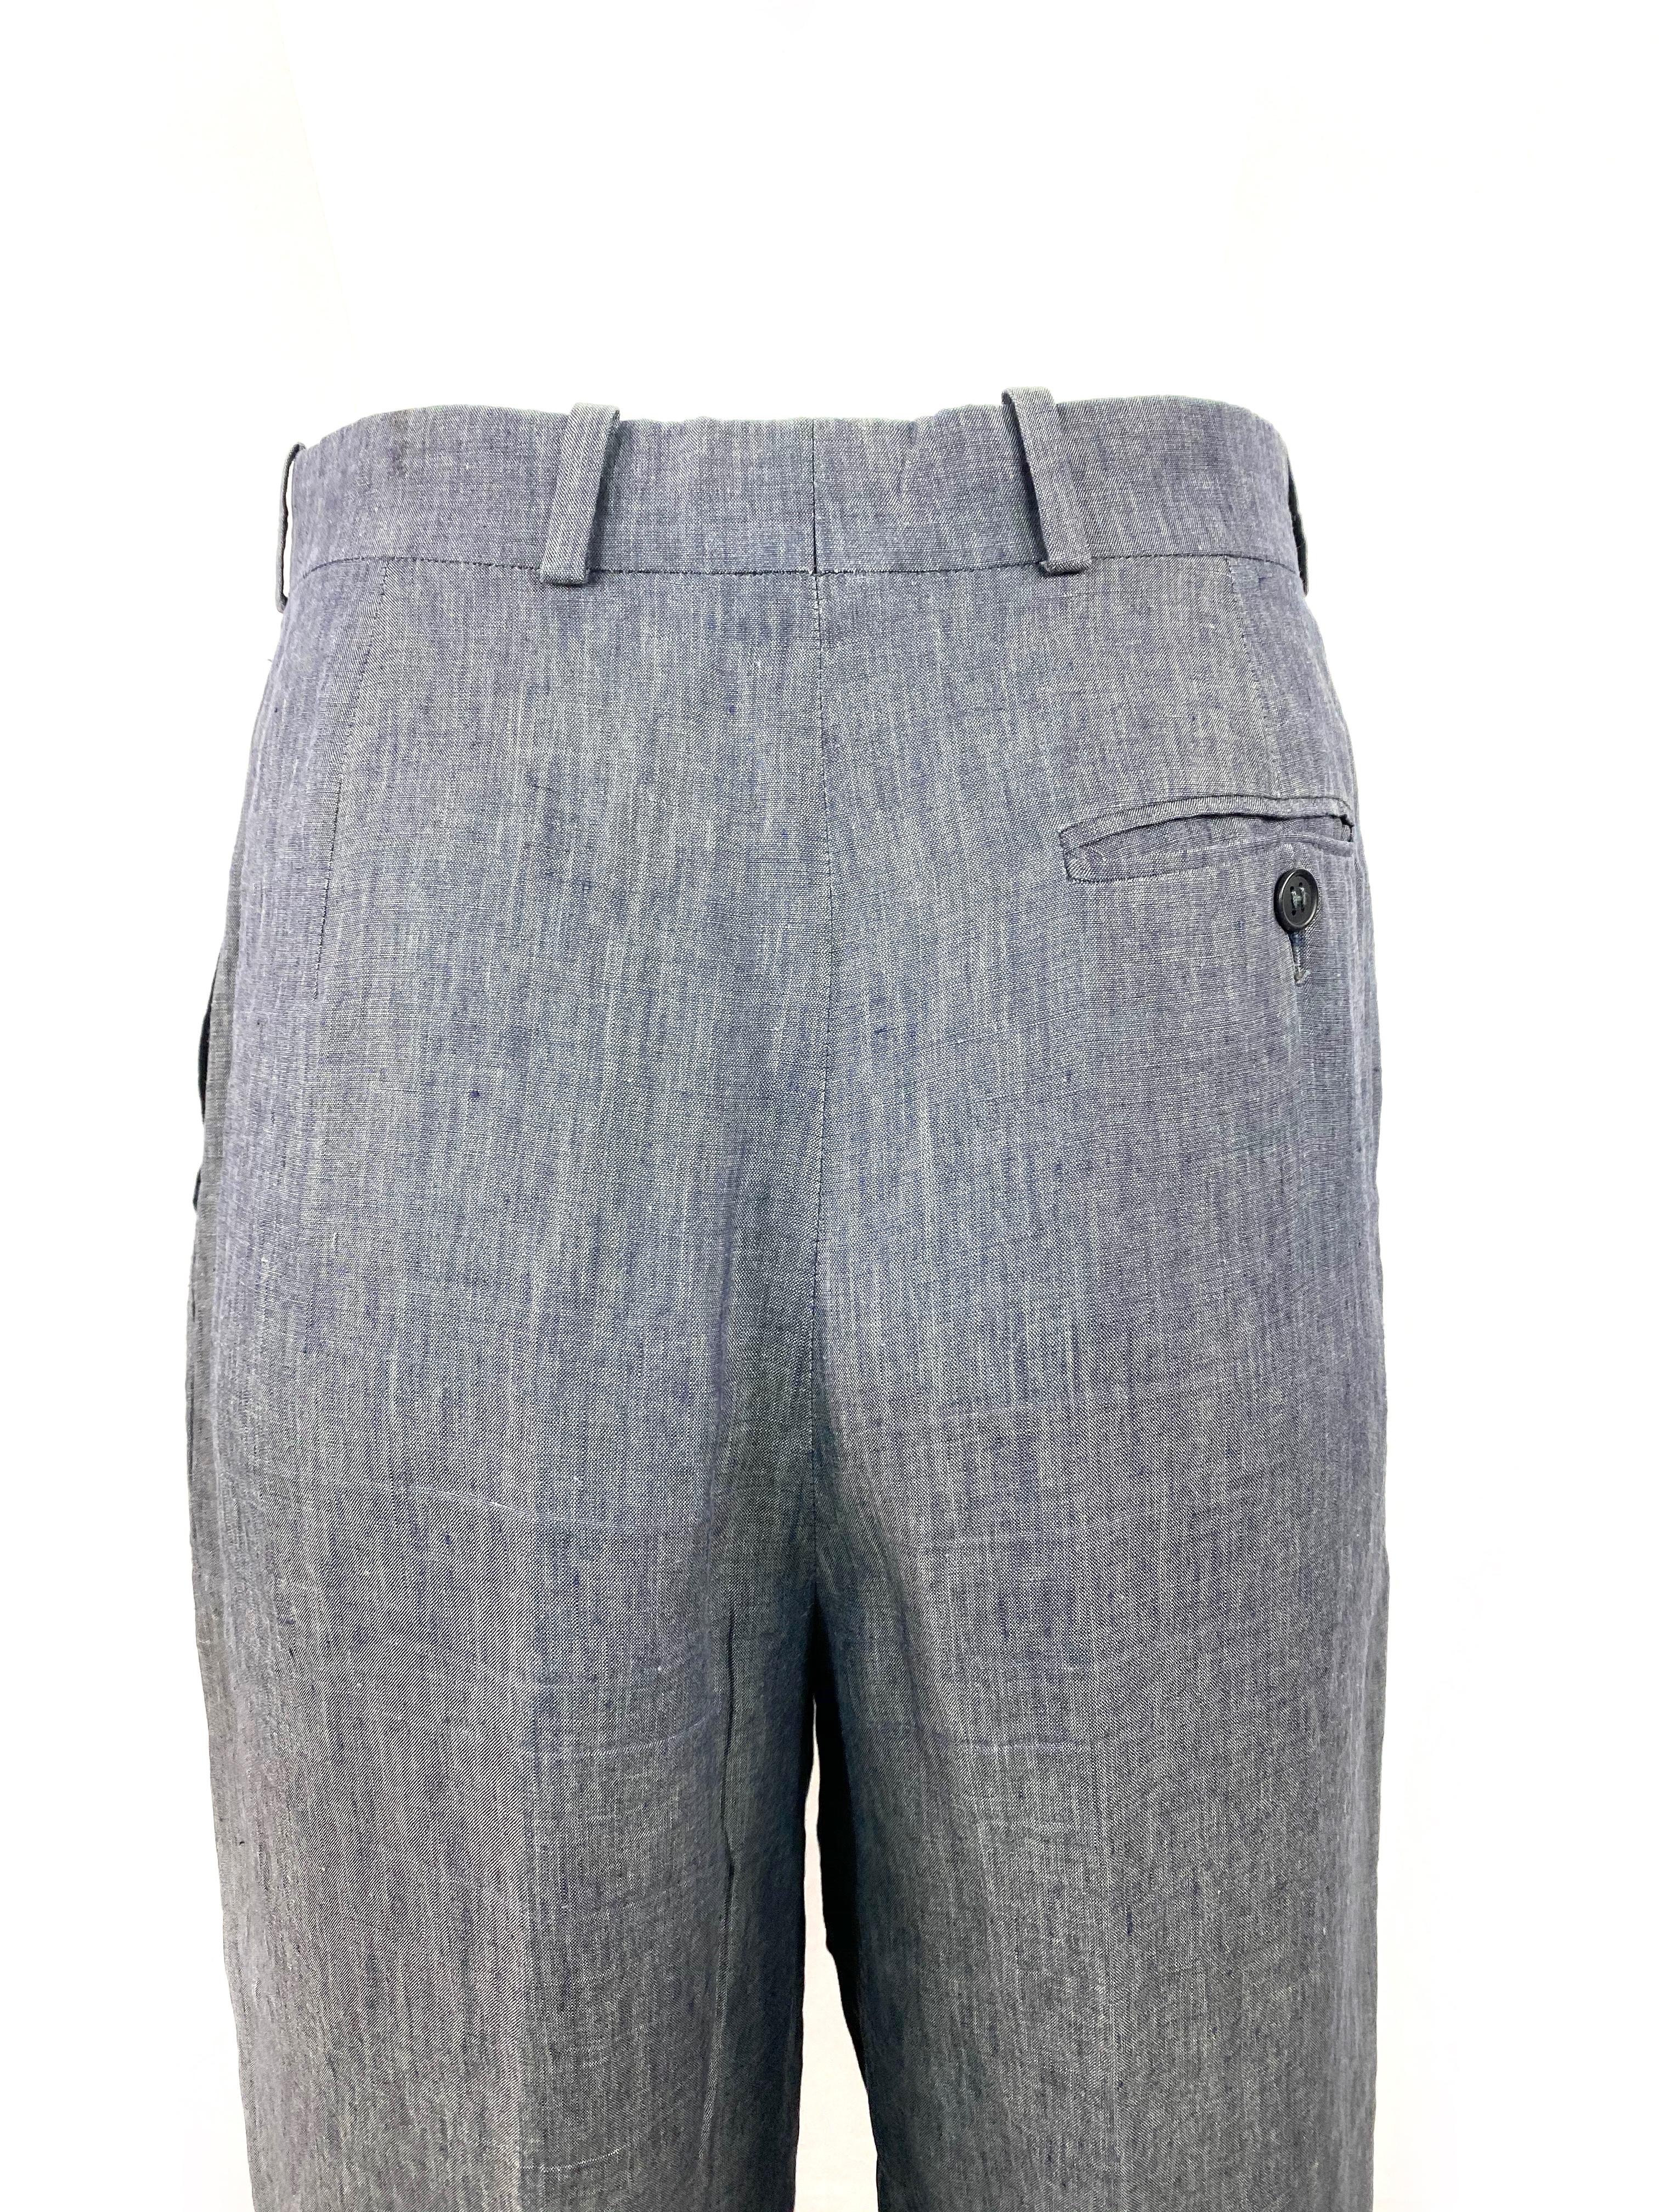 Gray HERMES Paris Blue Linen Straight Trousers Pants Size 38 For Sale